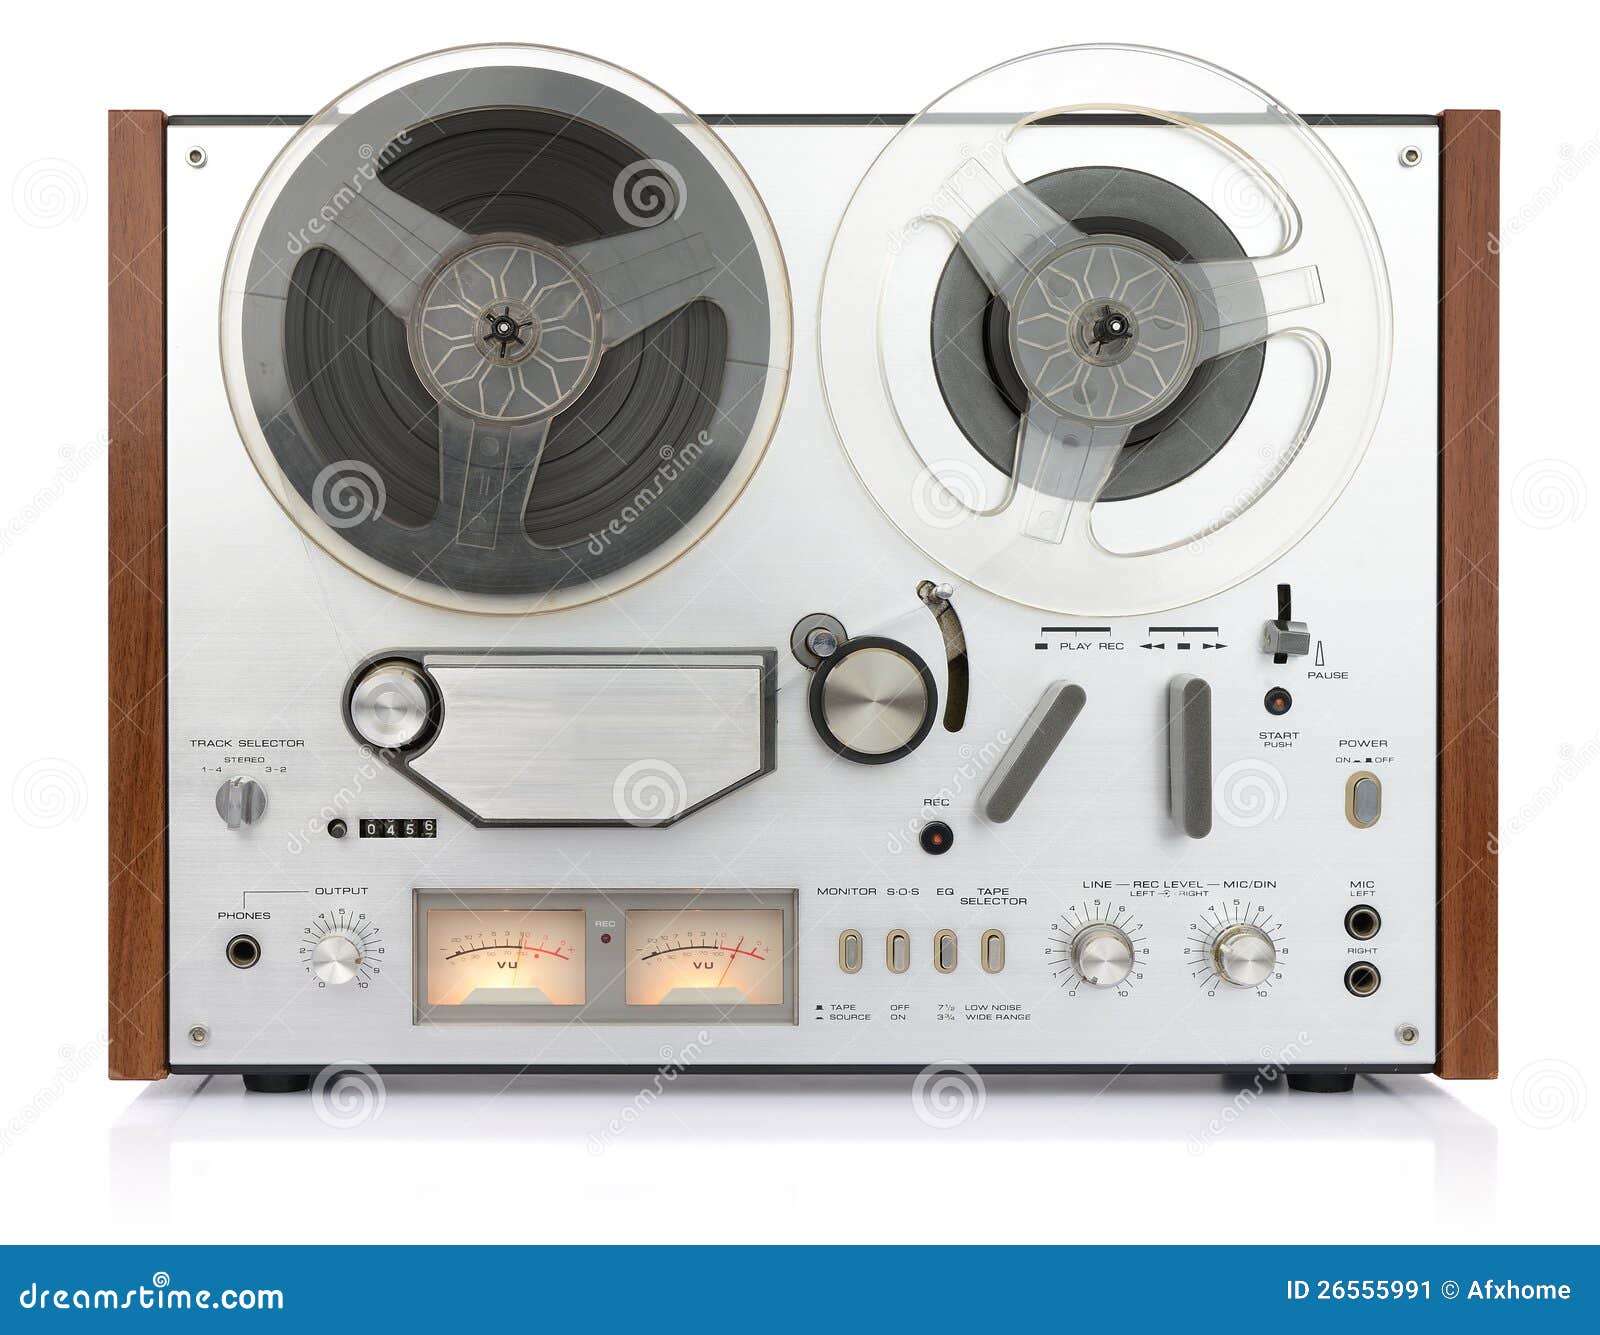 https://thumbs.dreamstime.com/z/vintage-analog-recorder-reel-to-reel-26555991.jpg